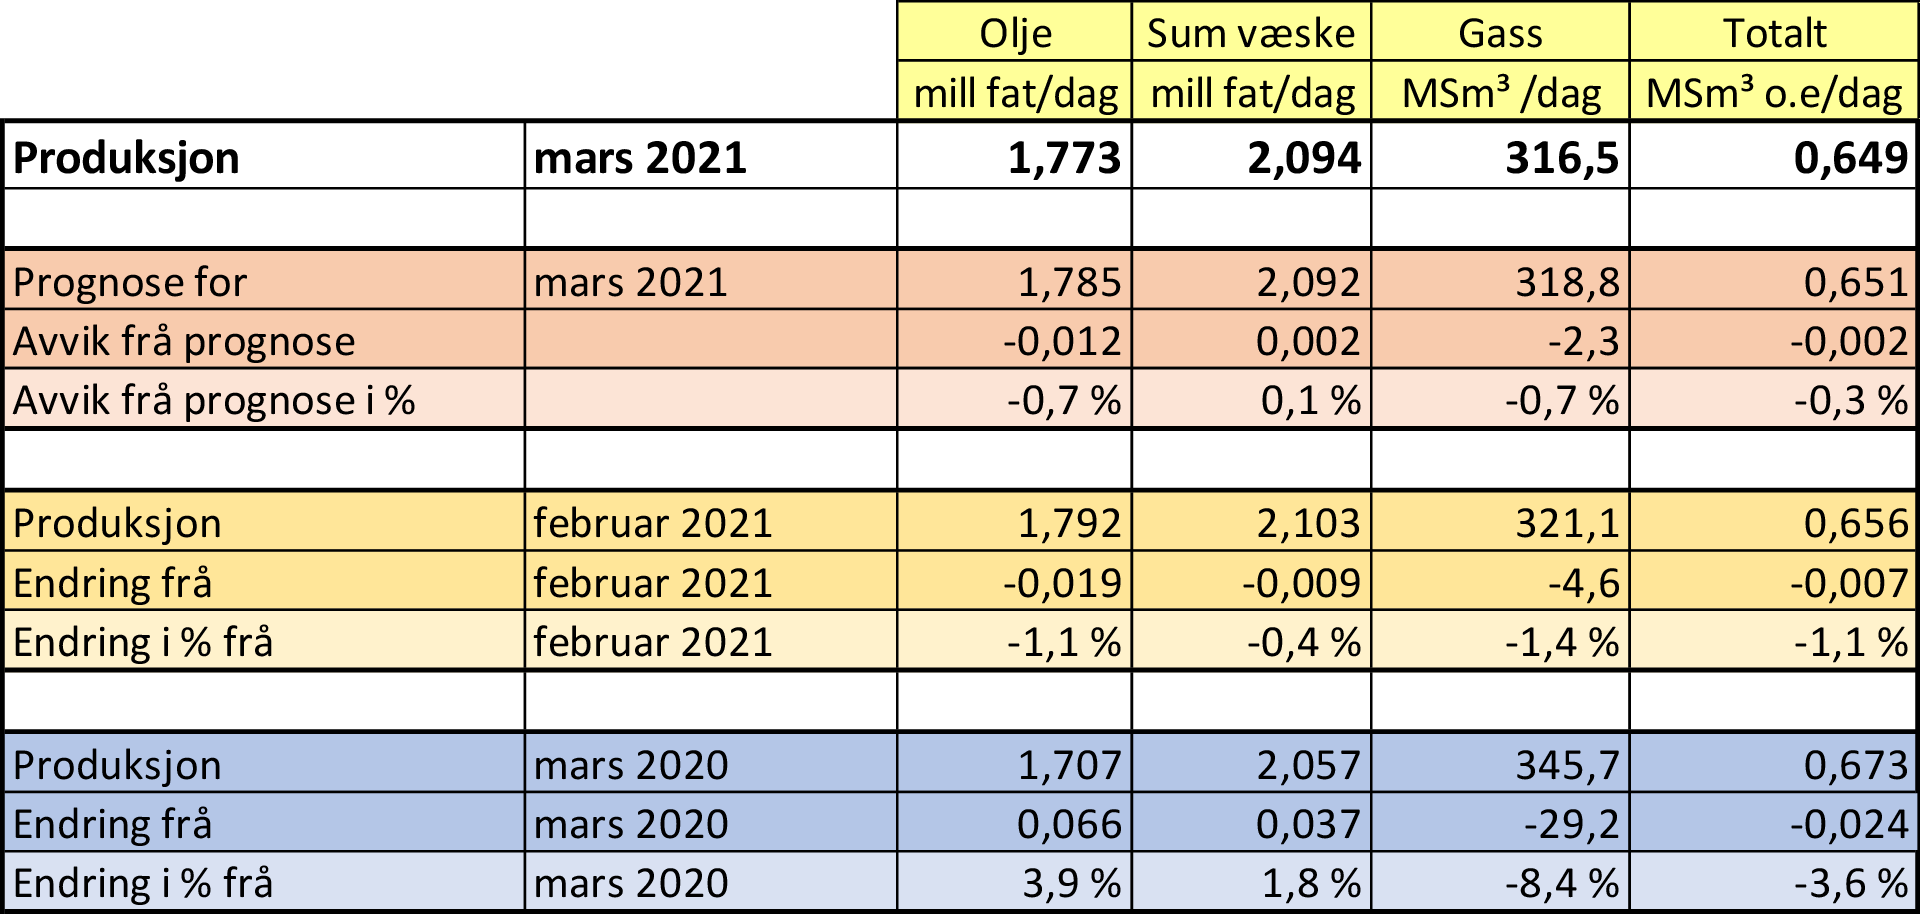 Tabell som viser olje- og gassproduksjon i mars 2021